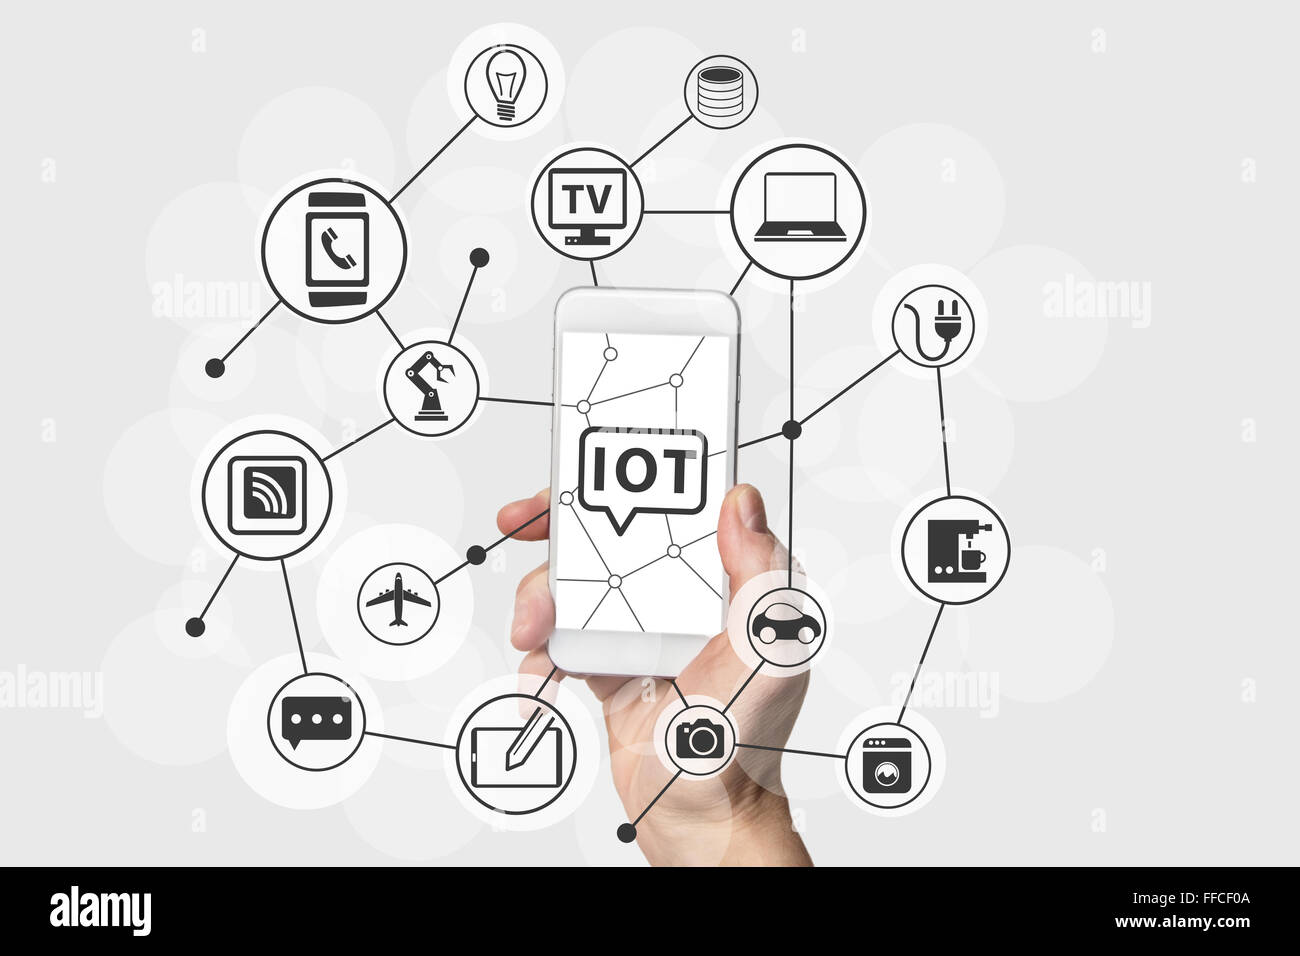 Internet des Objets (IOT) concept with hand holding blanc moderne et de l'argent smart phone. Les périphériques connectés dans le nuage Banque D'Images